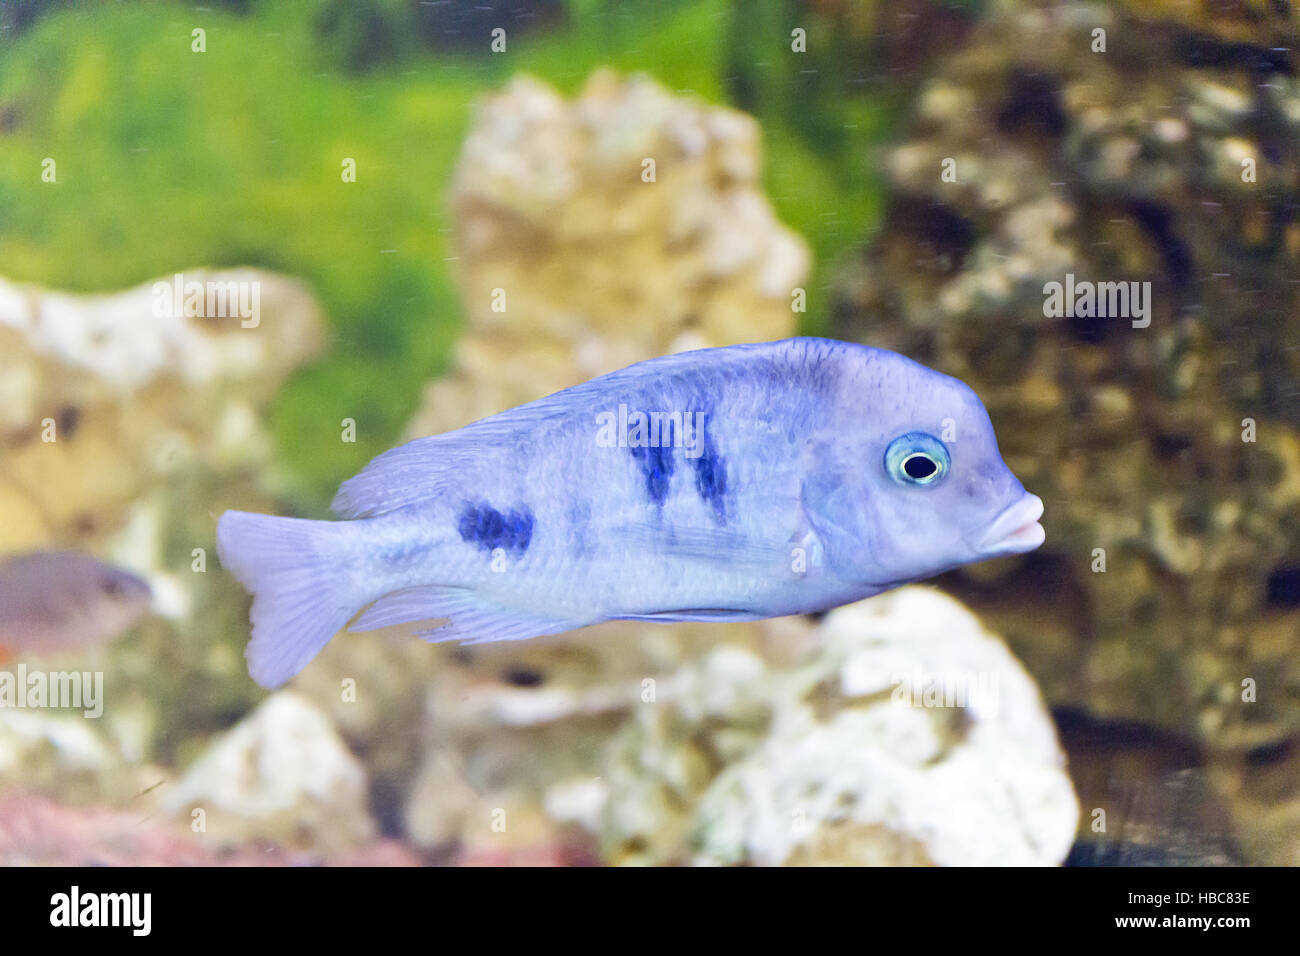 Haplochromis moorii in aquarium Stock Photo